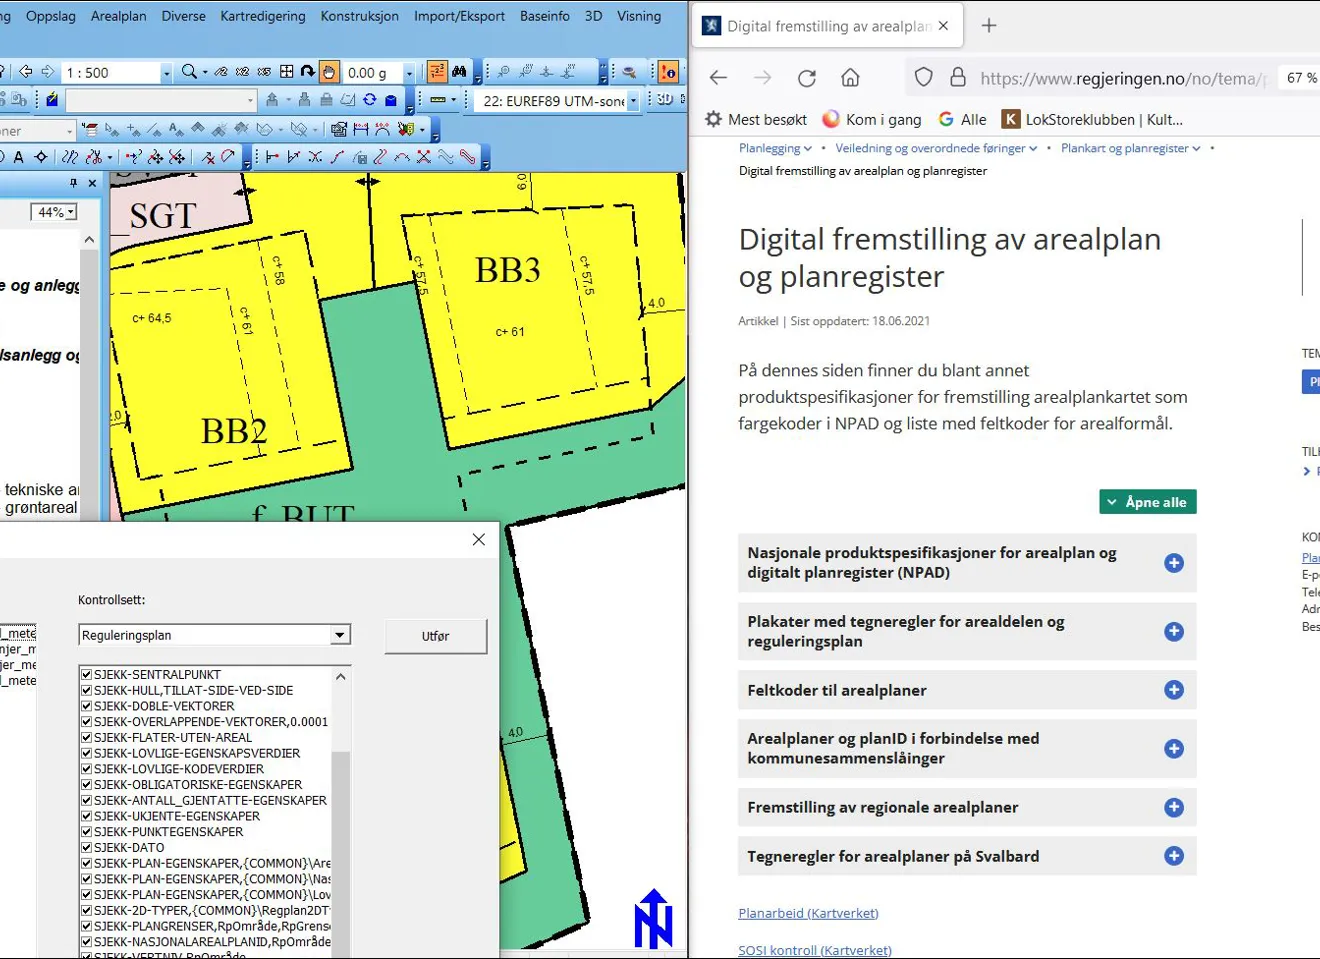 Digital fremstilling av arealplan og planregister